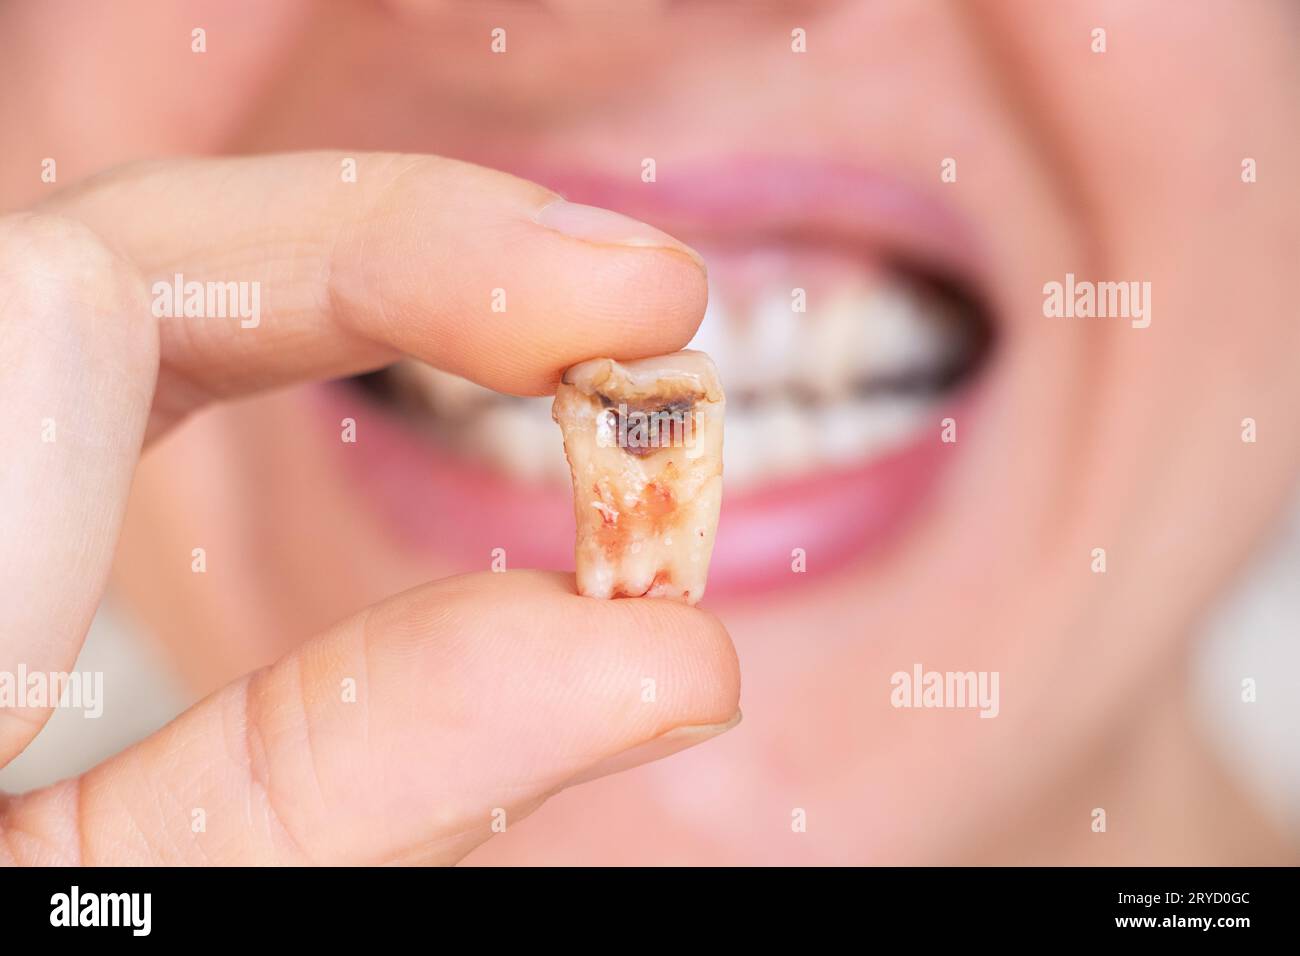 Une fille dans sa main tient une dent arrachée avec un trou noir au milieu de la dent gros plan, une dent malade dans sa main après le retrait qui pourrait n Banque D'Images